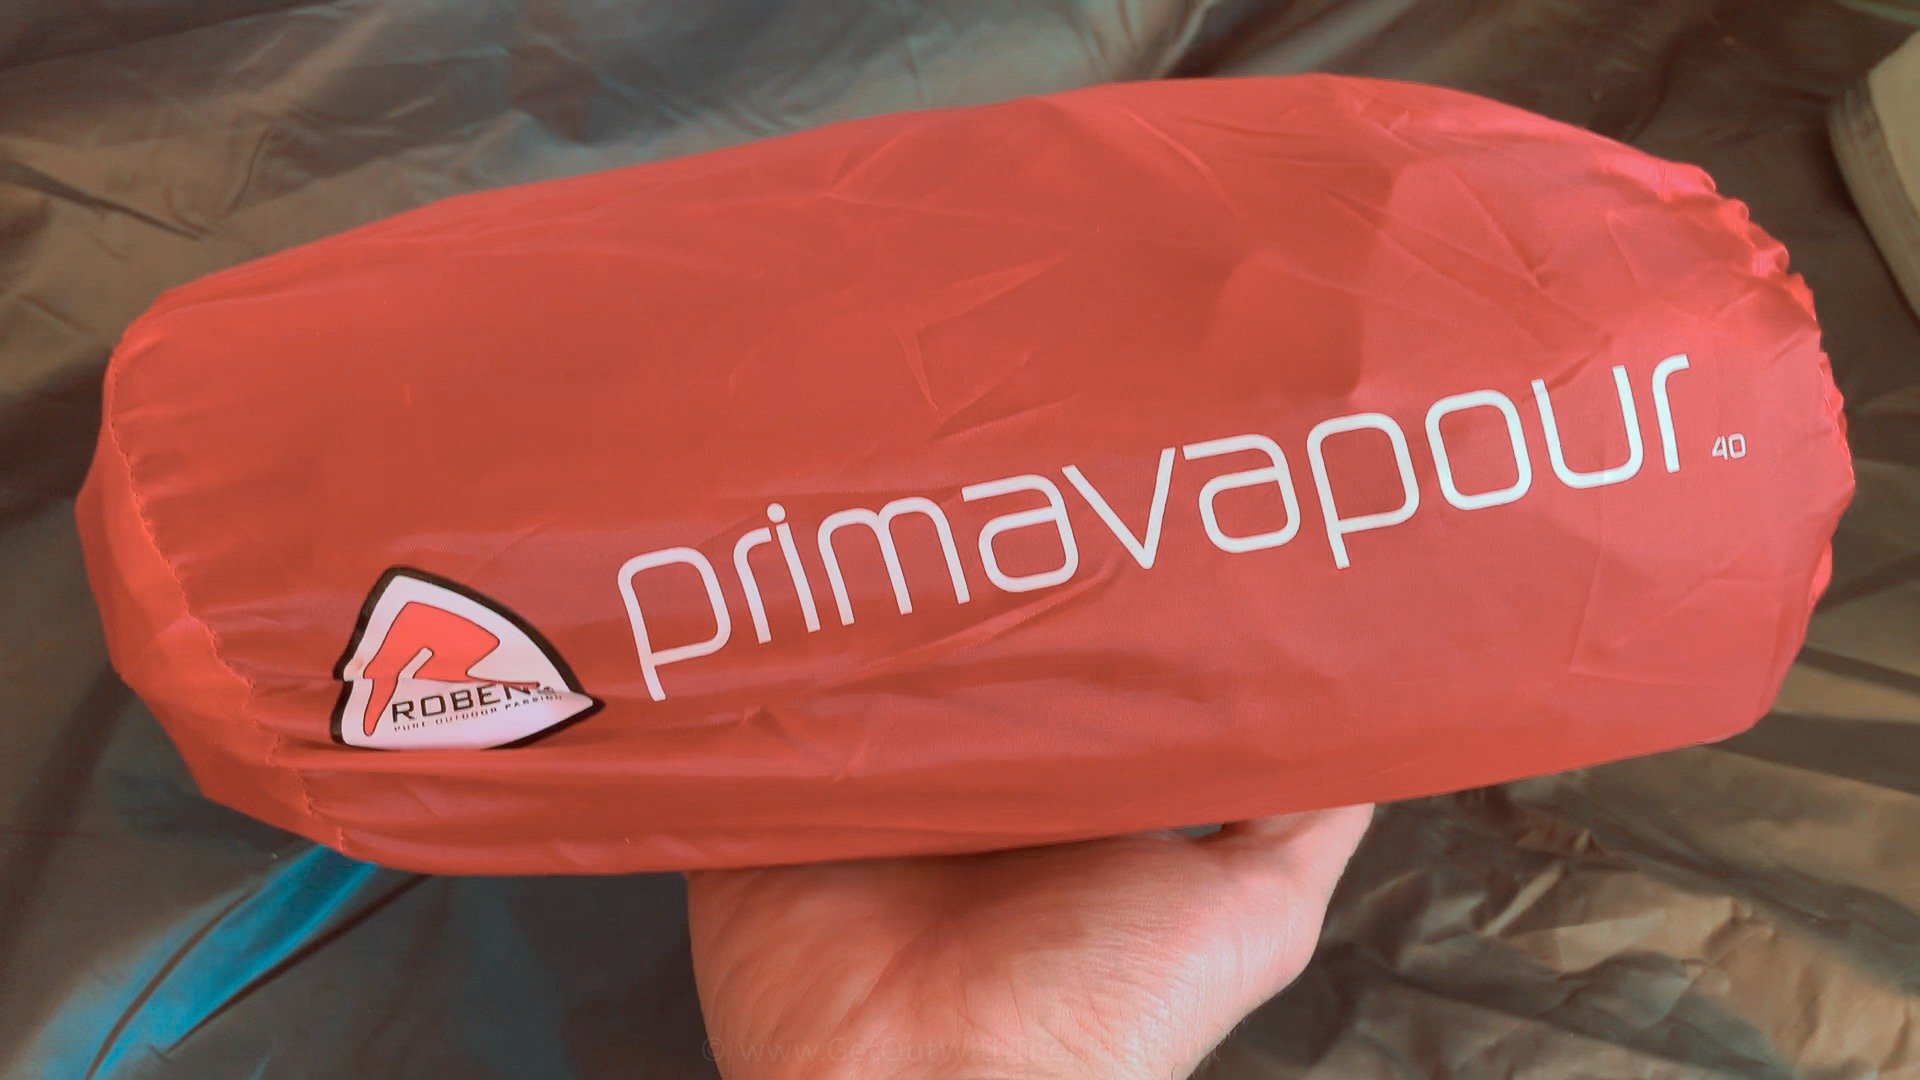 Primavapour in its bag